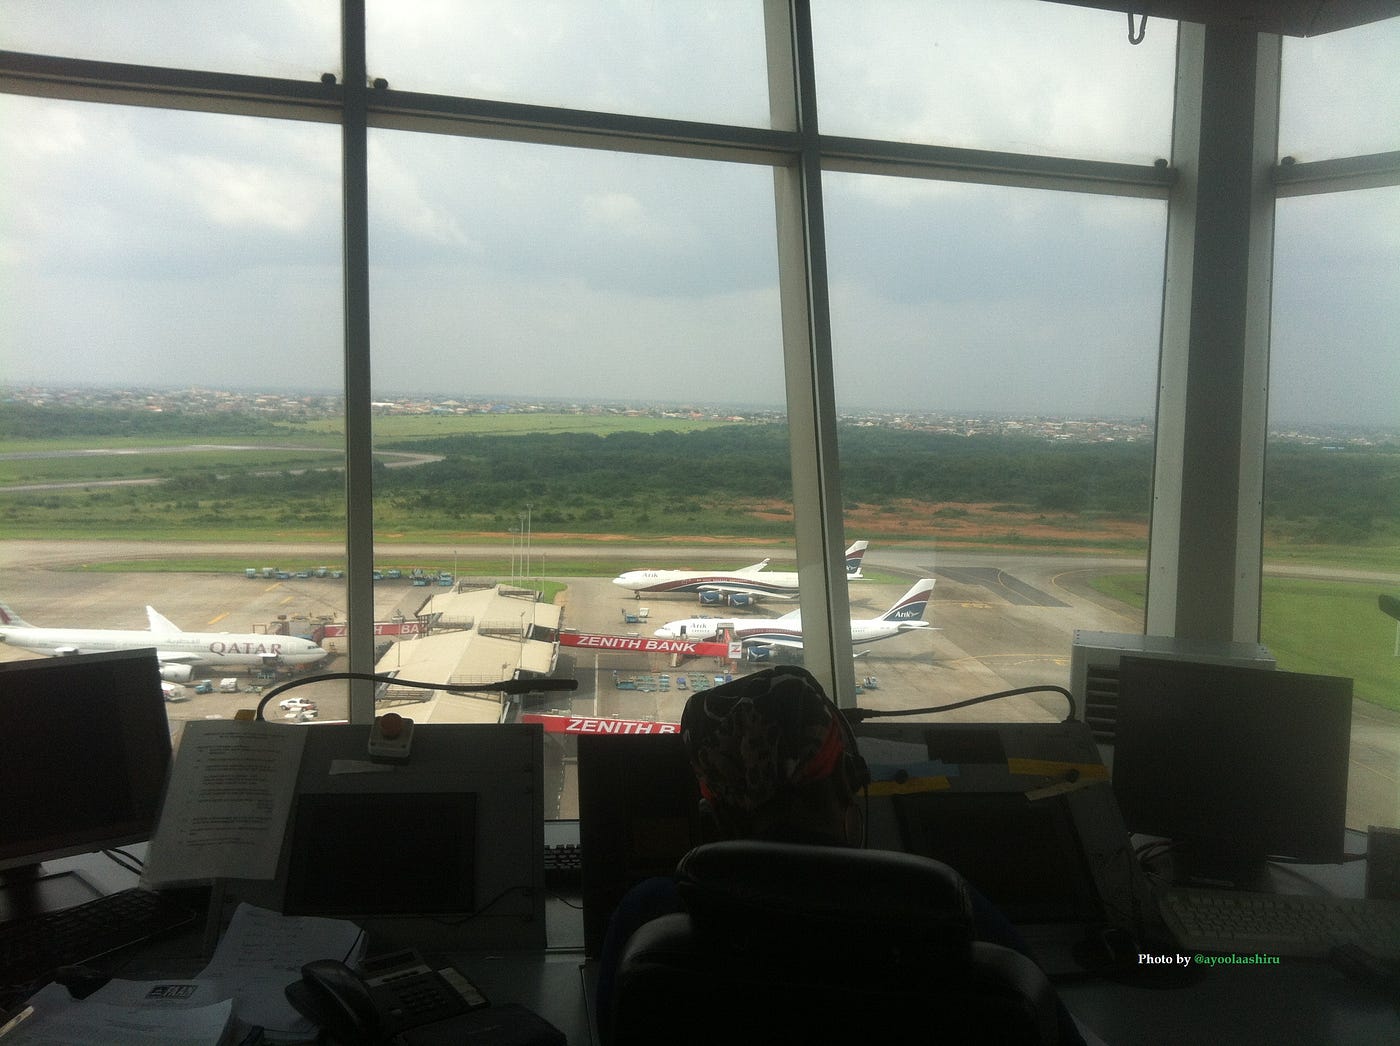 Murtala Muhammed International Airport - Wikipedia